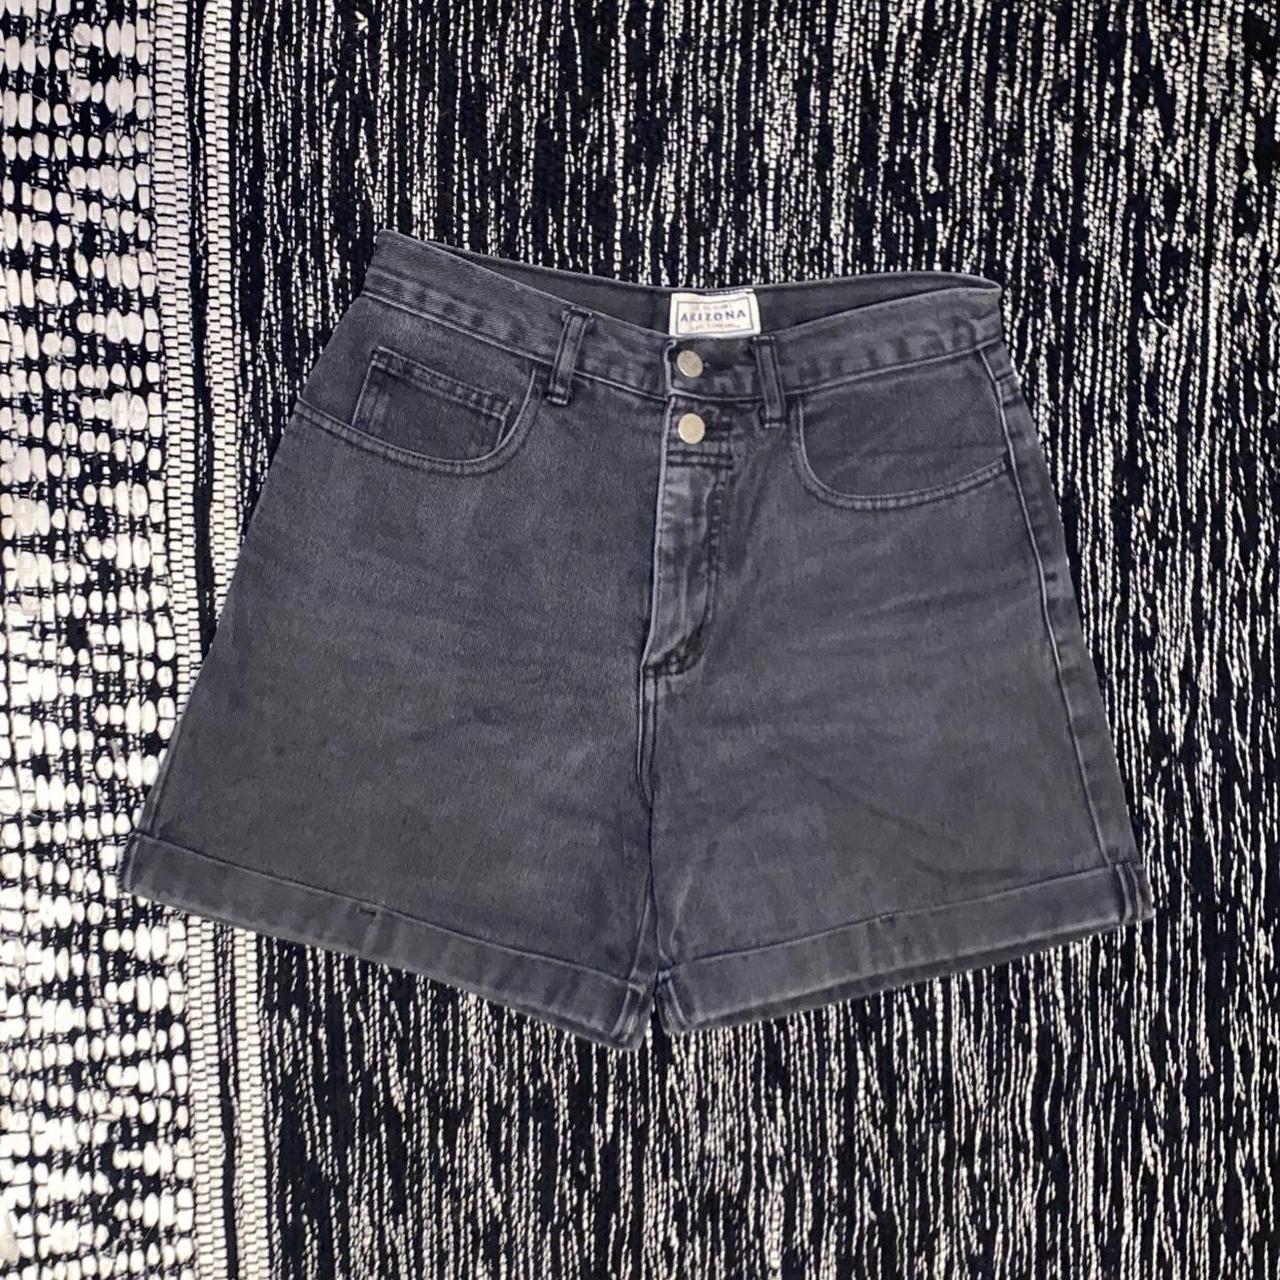 Vintage Arizona shorts.... - denim Depop black waisted high